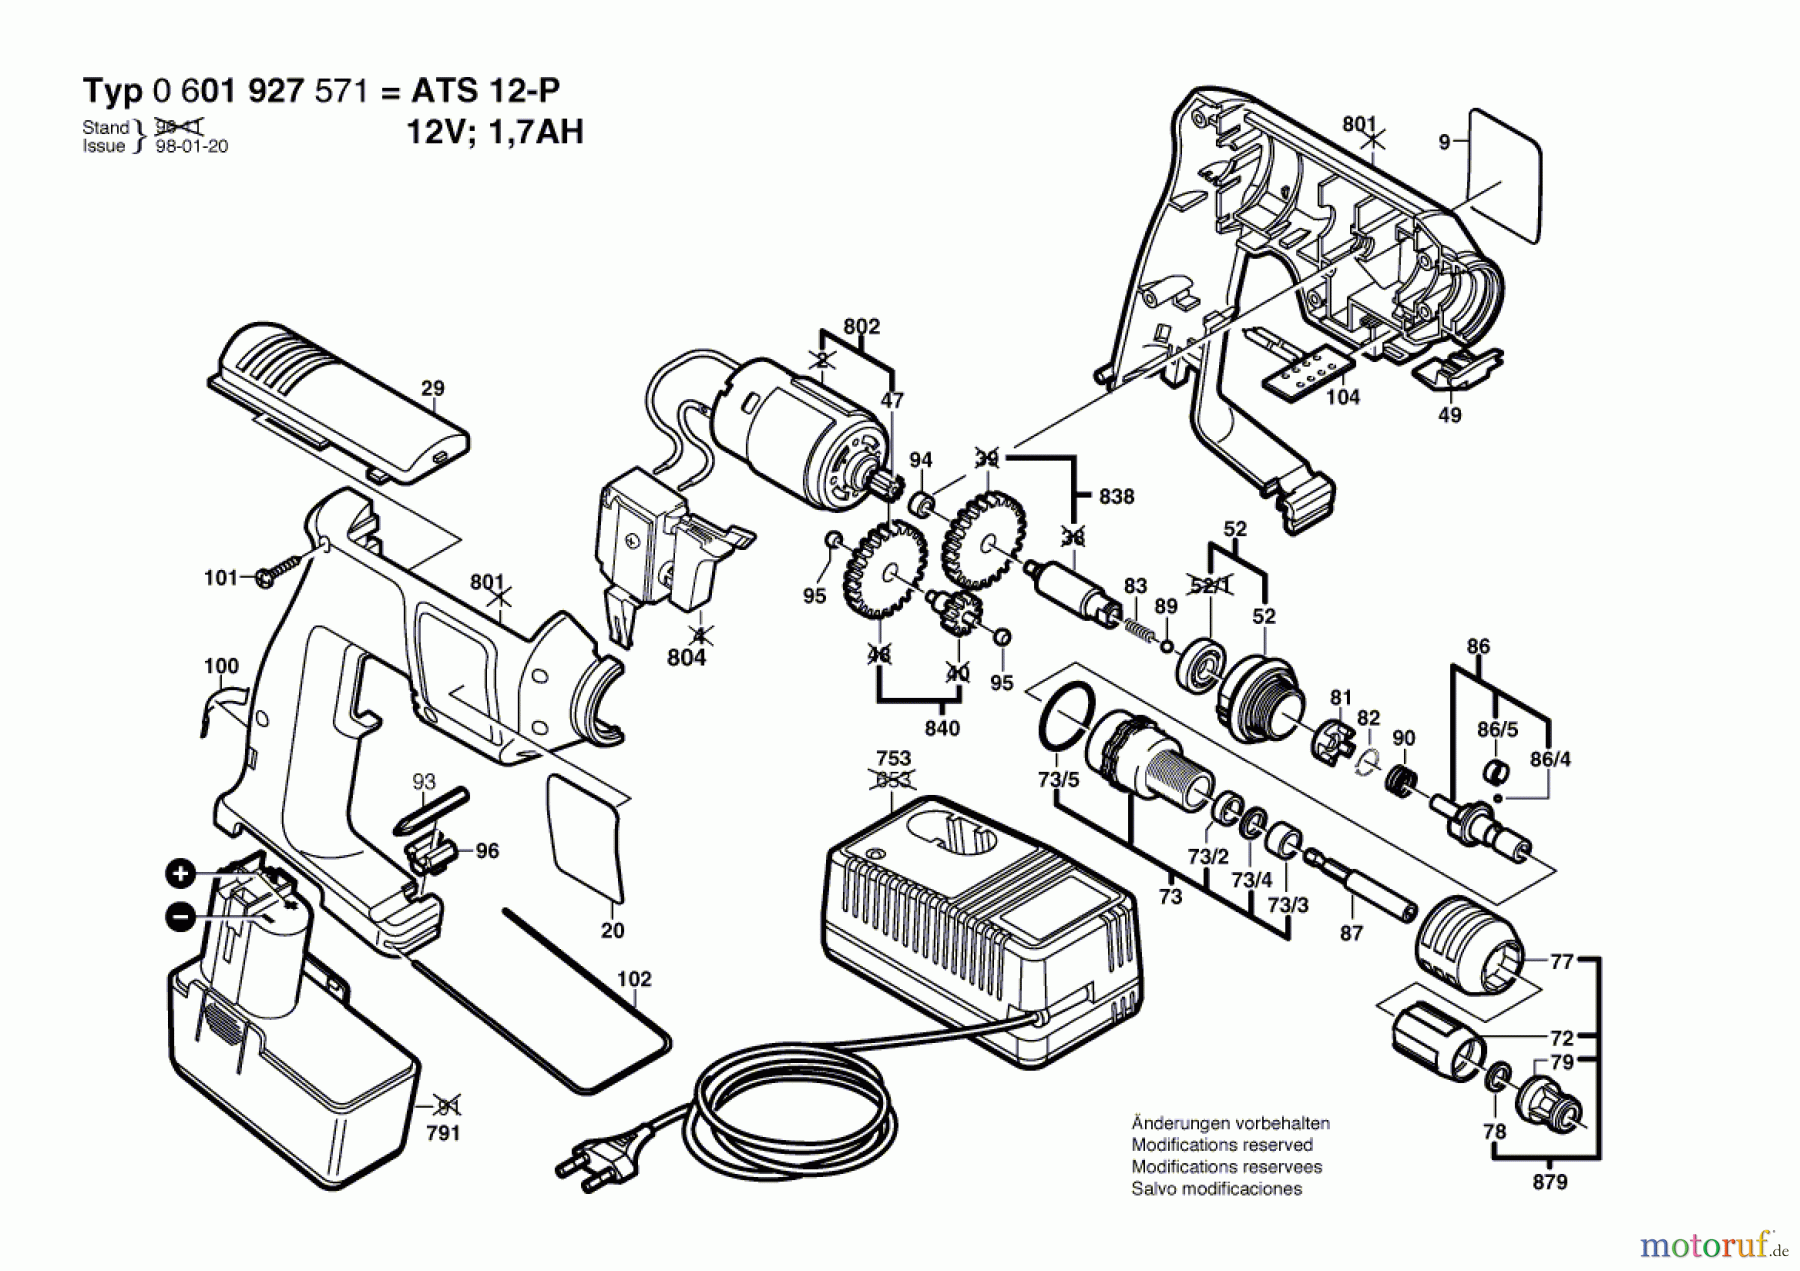  Bosch Akku Werkzeug Akku-Schrauber ATS 12-P Seite 1